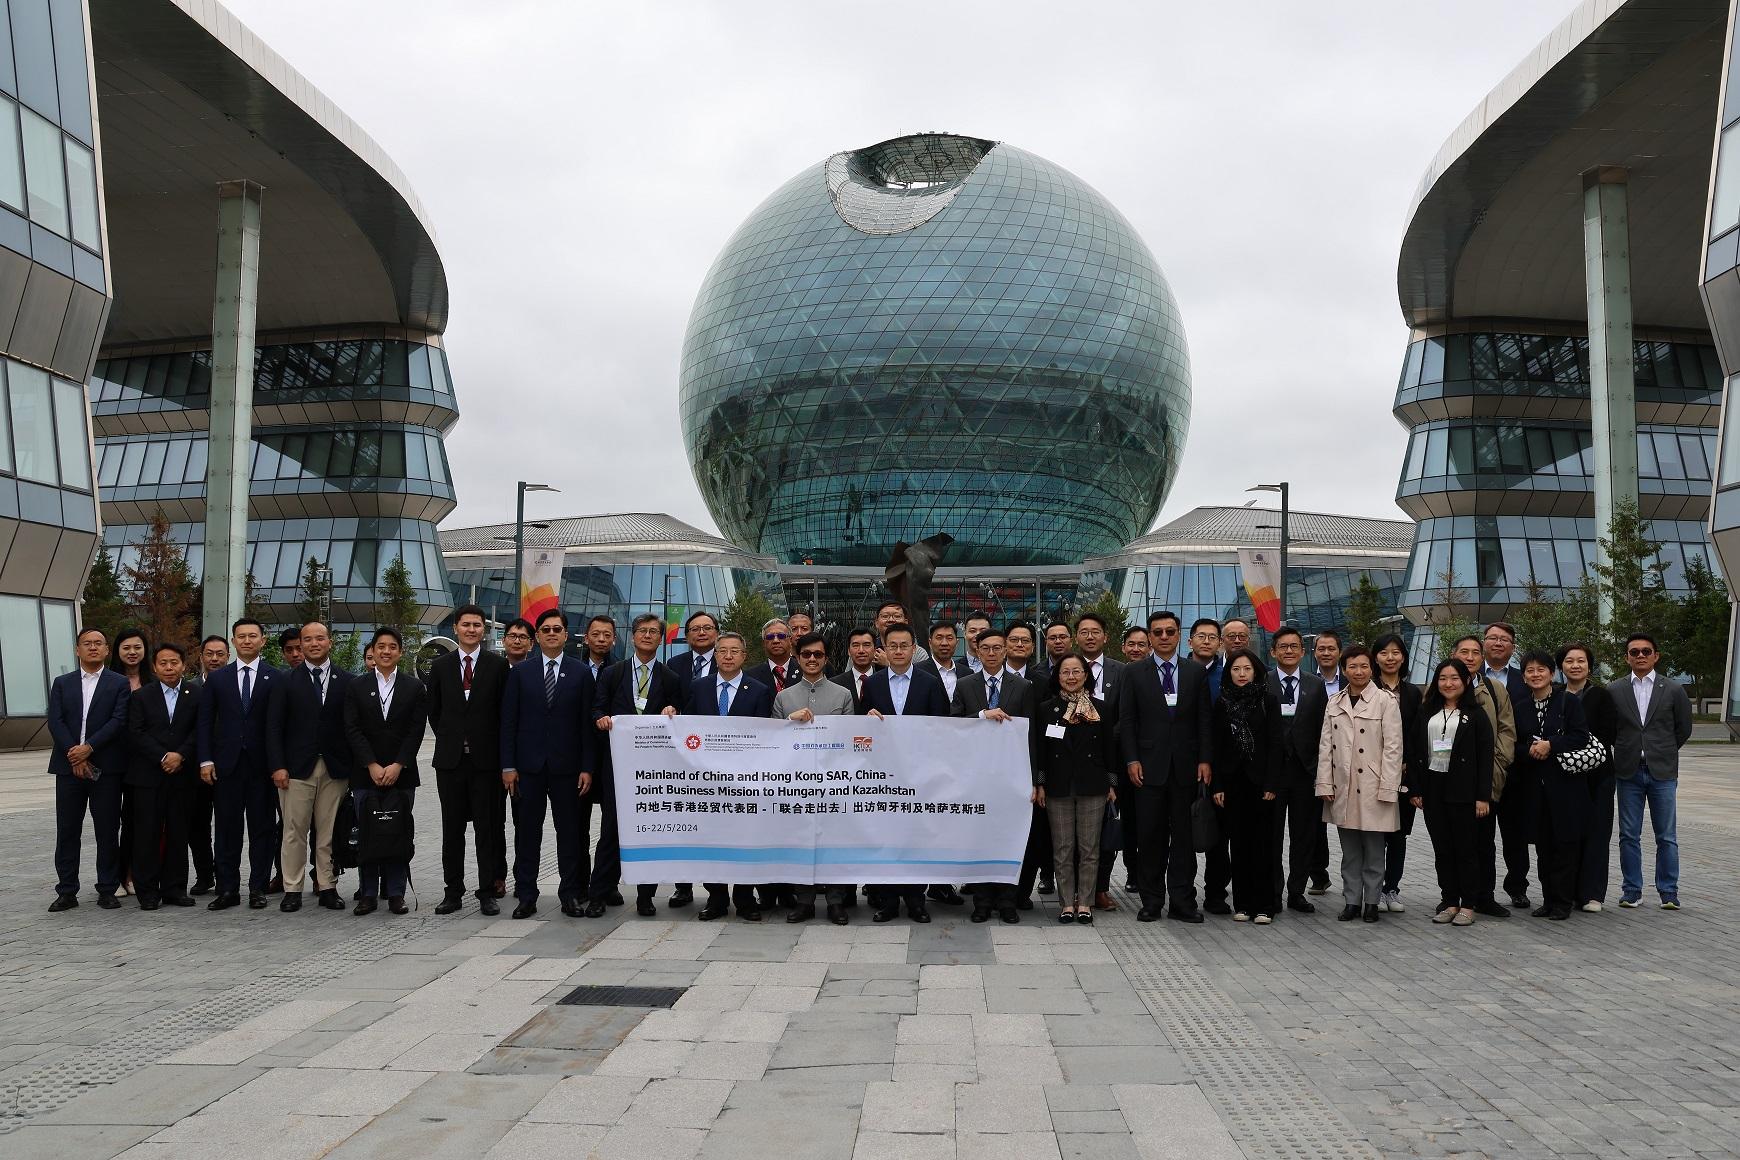 内地与香港经贸代表团于五月十六至二十二日访问匈牙利和哈萨克斯坦。图示代表团五月二十日在哈萨克斯坦参观阿斯塔纳枢纽国际IT初创科技园。